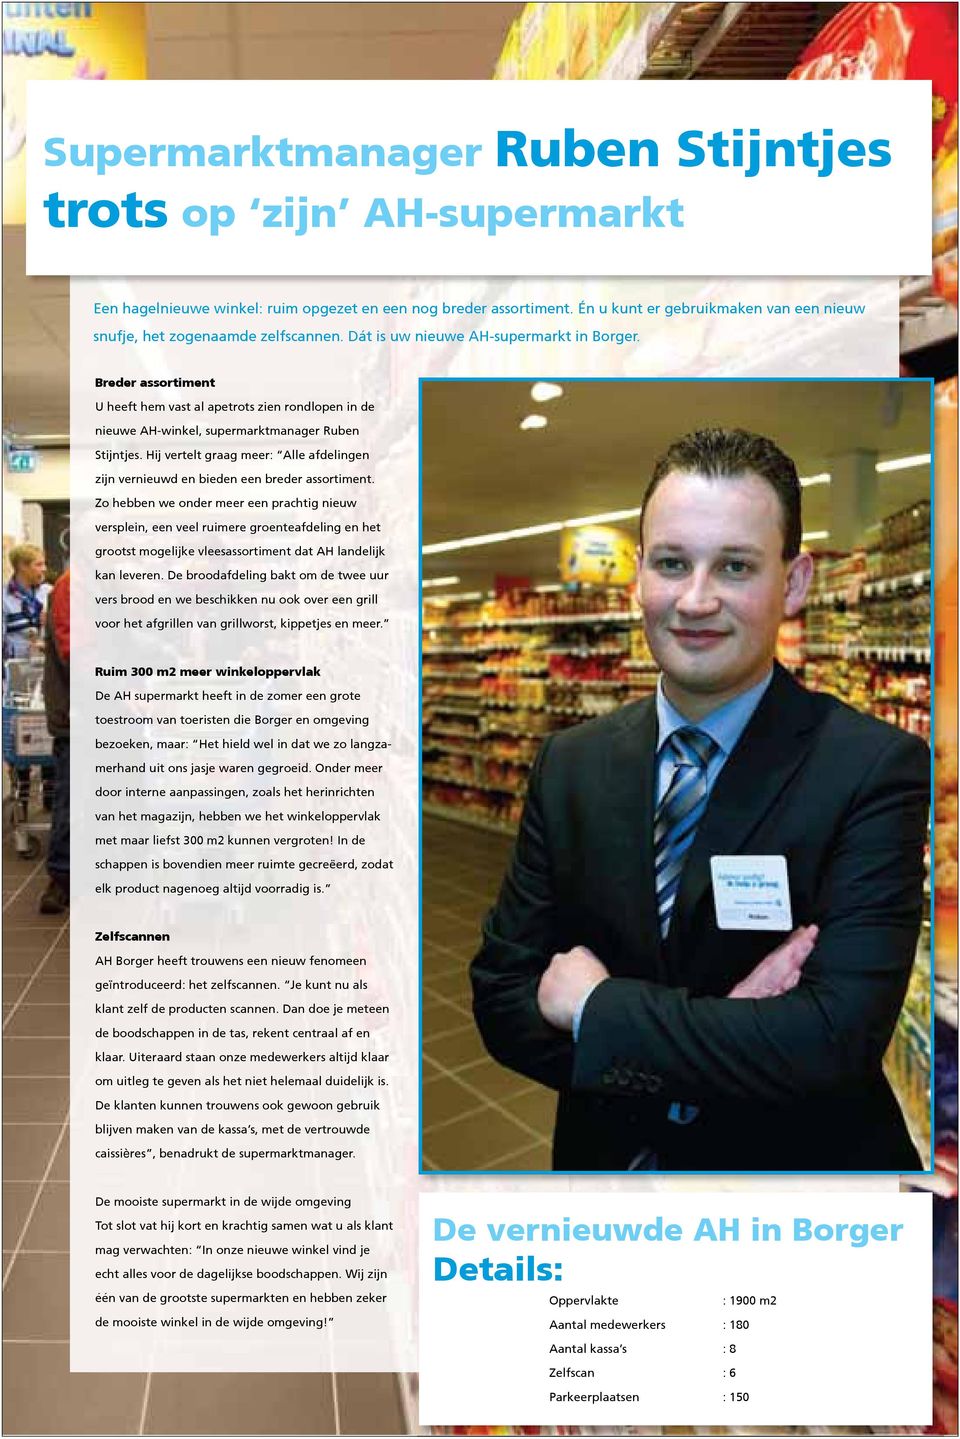 Breder assortiment U heeft hem vast al apetrots zien rondlopen in de nieuwe AH-winkel, supermarktmanager Ruben Stijntjes.